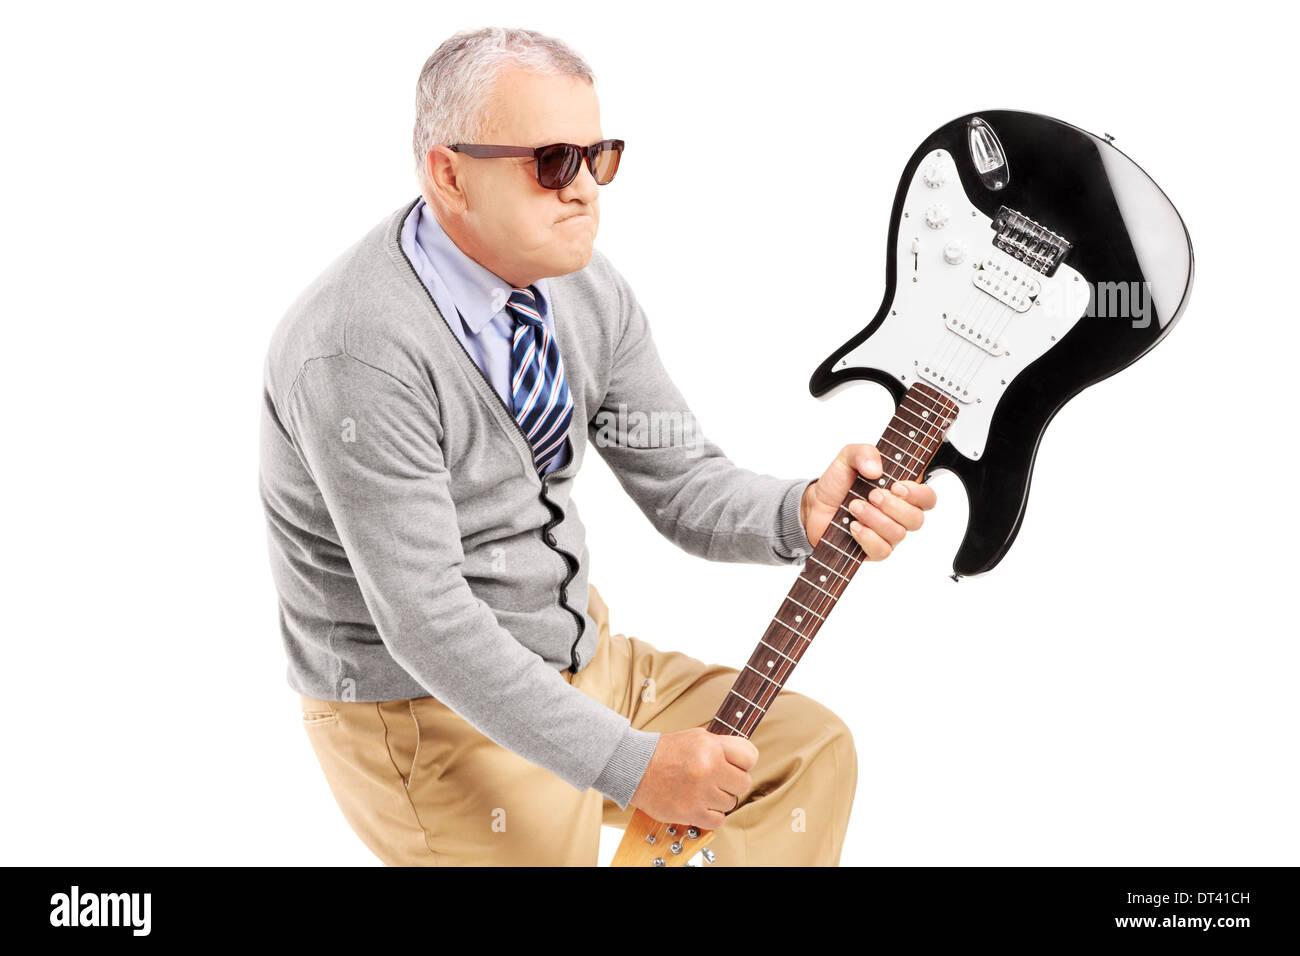 Angry man briser une guitare électrique Banque D'Images